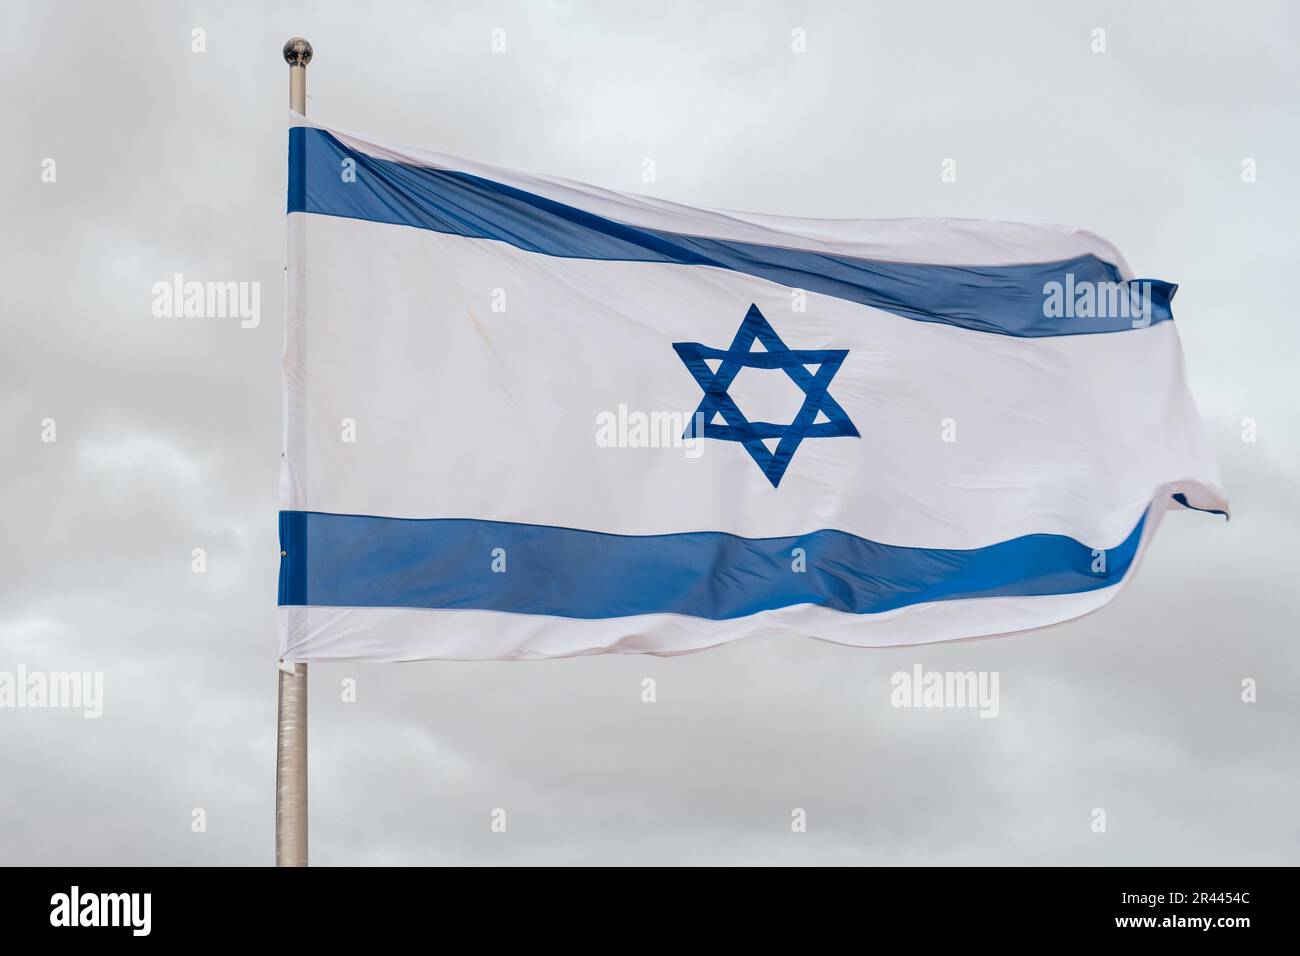 Drapeau israélien en un jour nuageux Banque D'Images